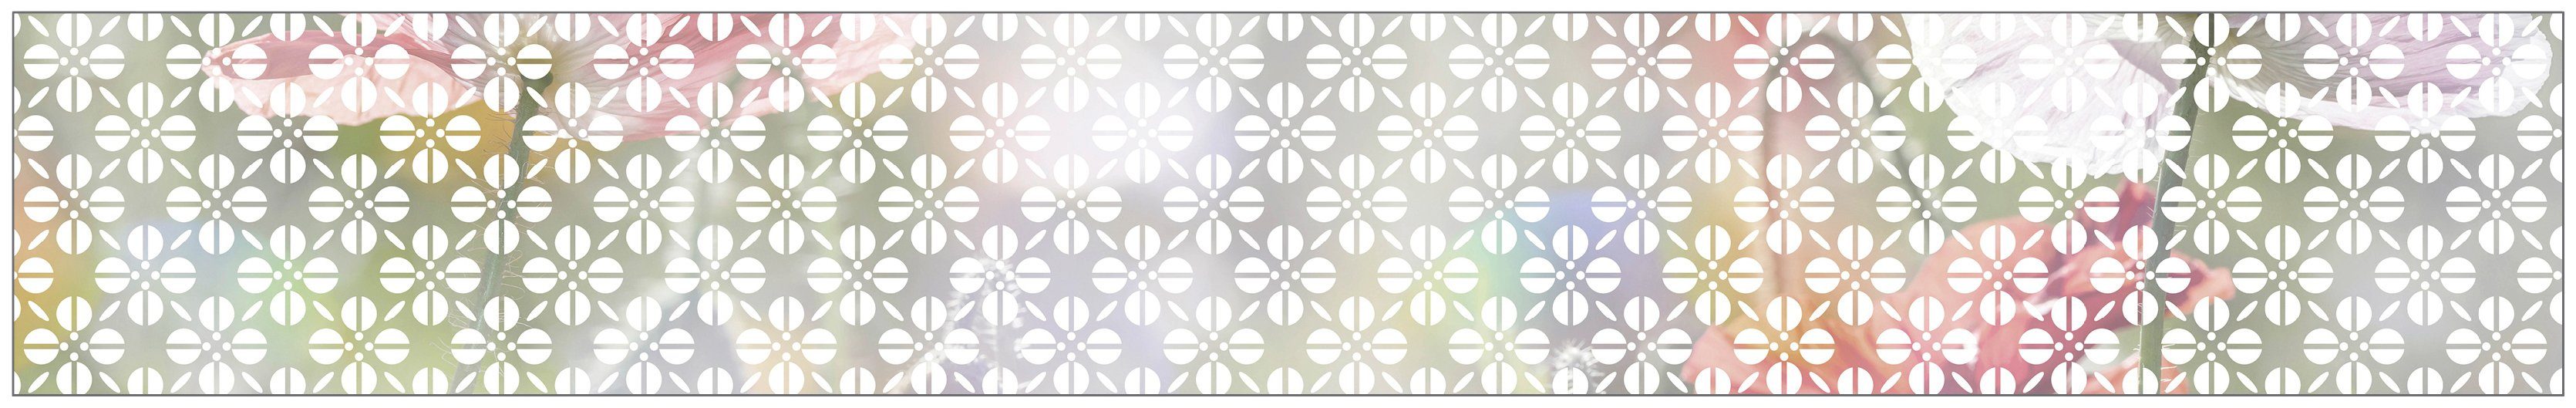 Fensterfolie Look Grafik Blumenmuster white, 30 haftend x MySpotti, 200 glatt, statisch halbtransparent, cm